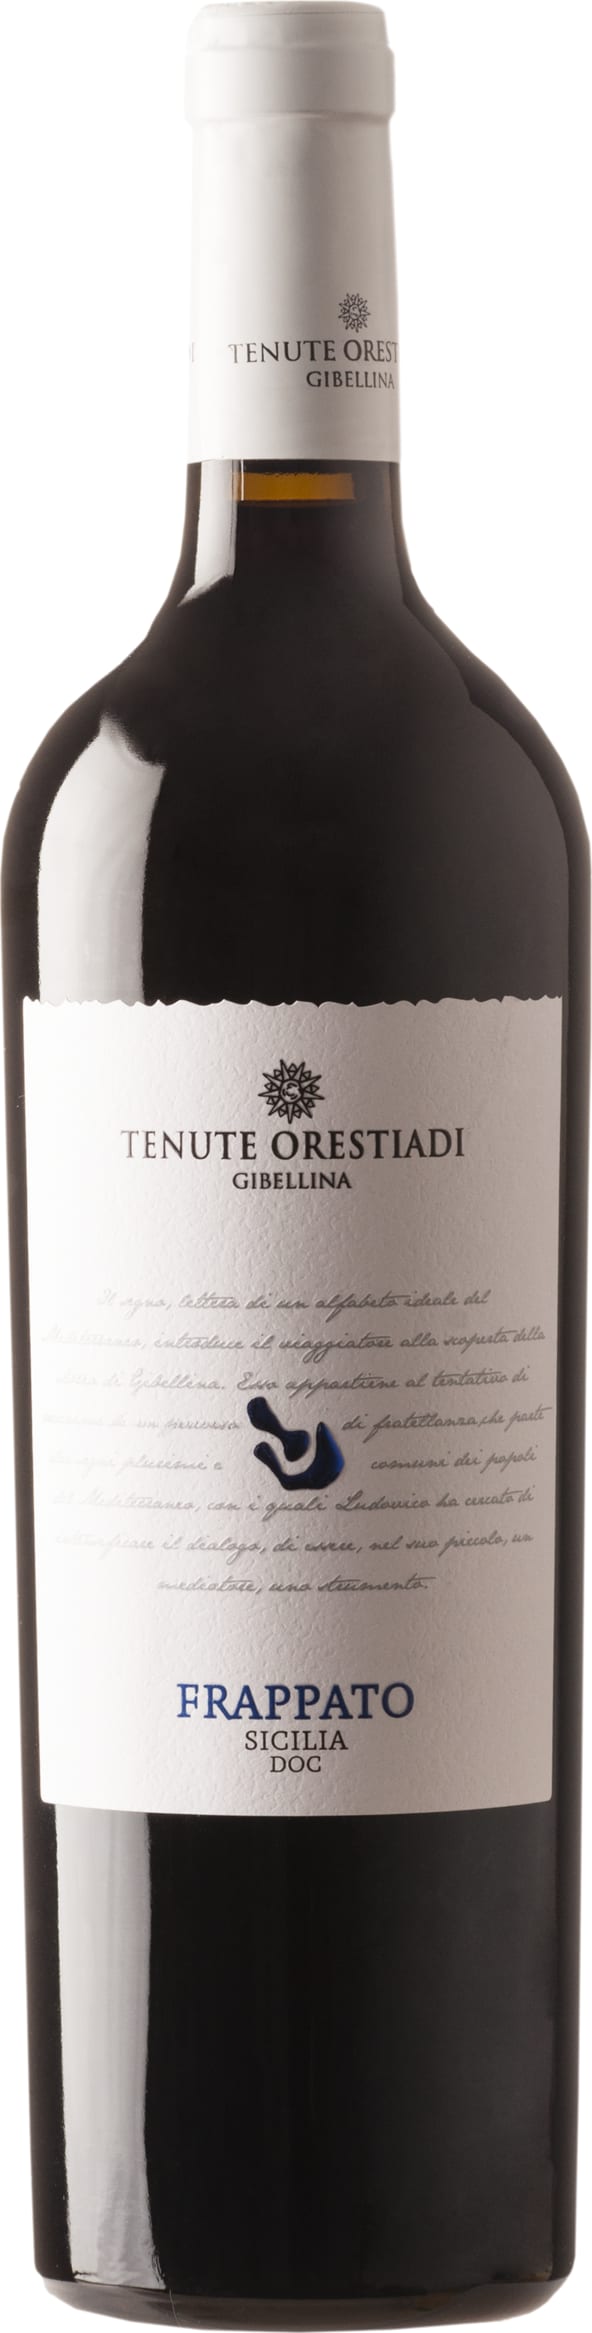 Tenute Orestiadi - Tenute Orestiadi Frappato 2021 6x75cl - Just Wines 